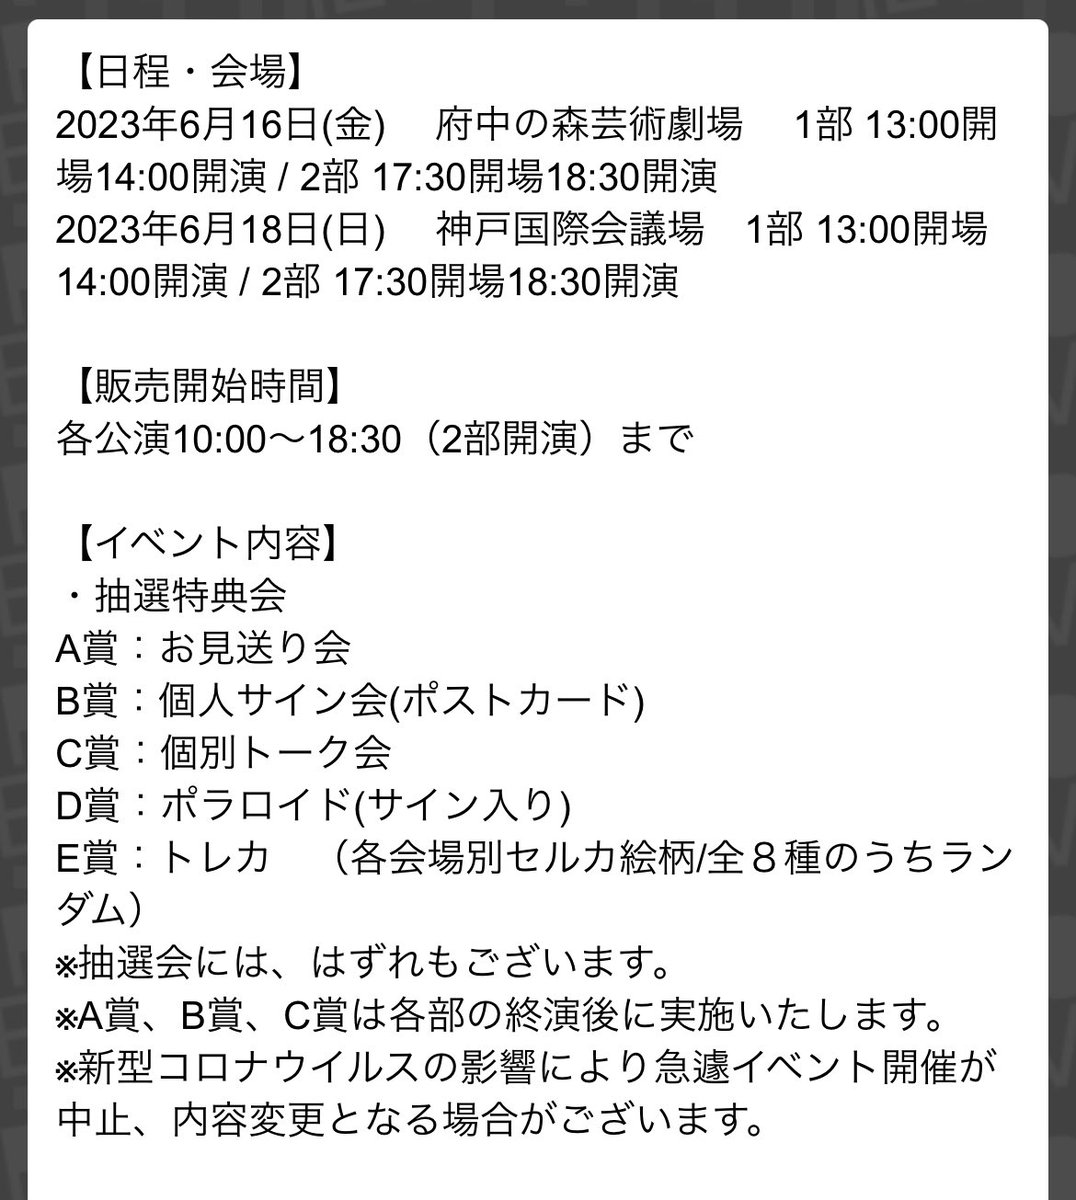 EPEX タワレコ タワーレコード 渋谷 CDサイン クム ドンヒョン 3部 